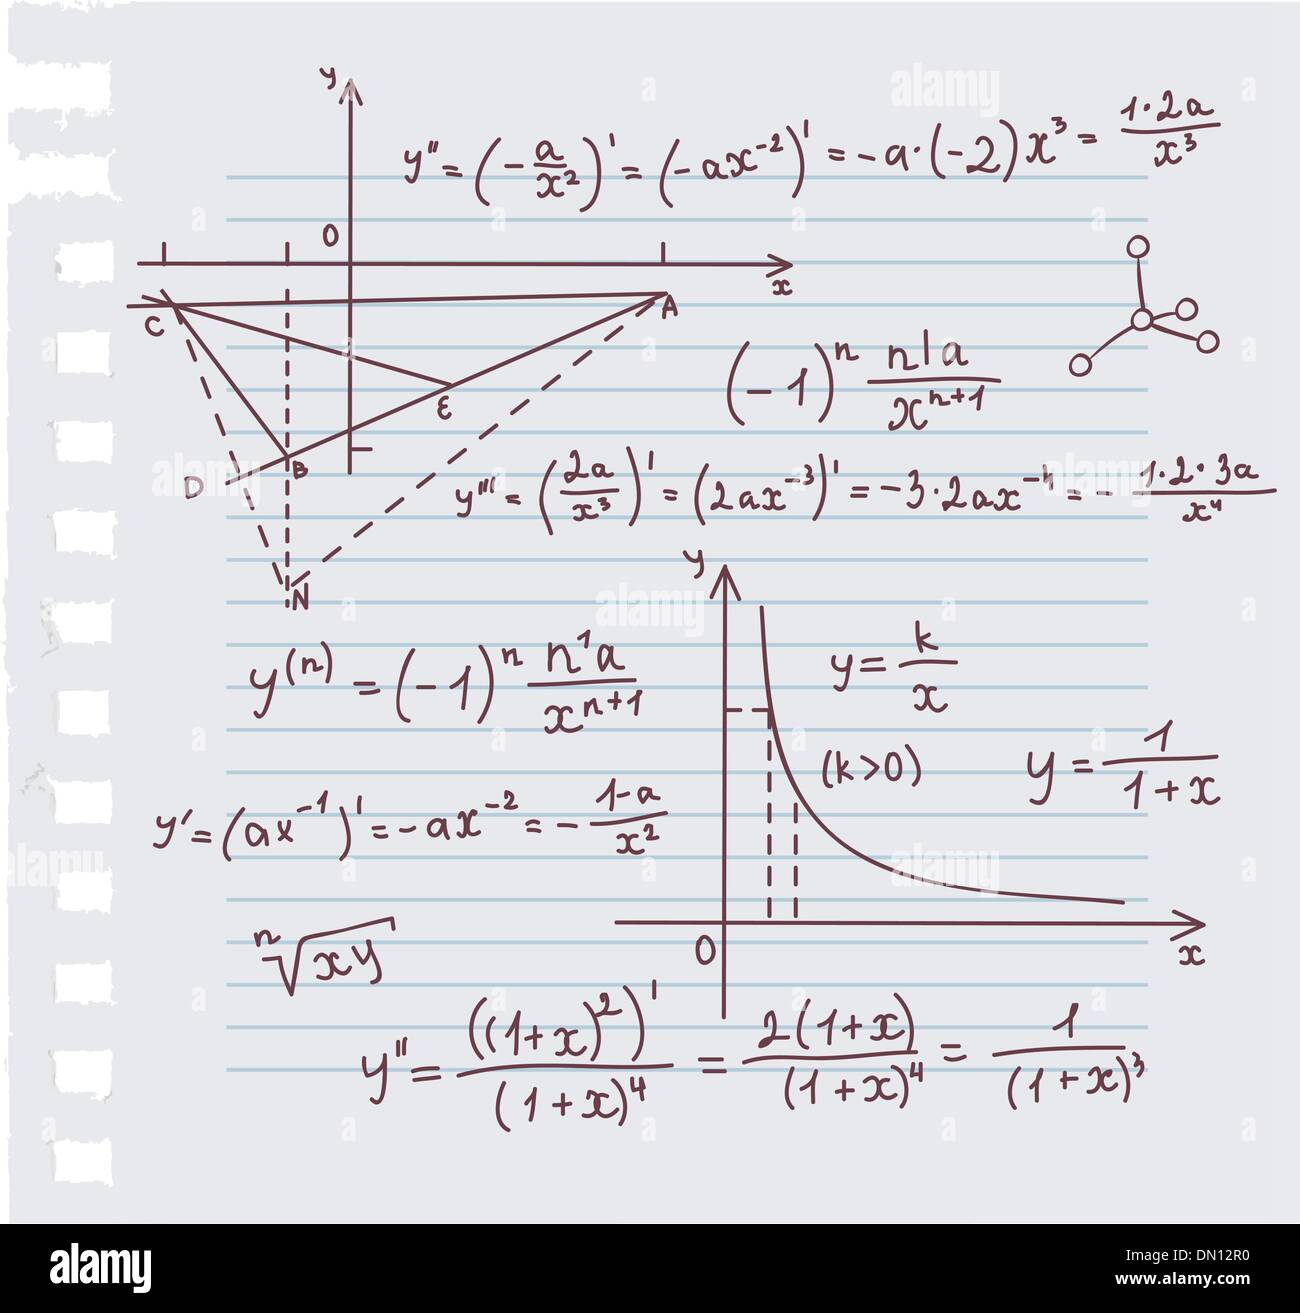 Algebra doodle background Stock Vector